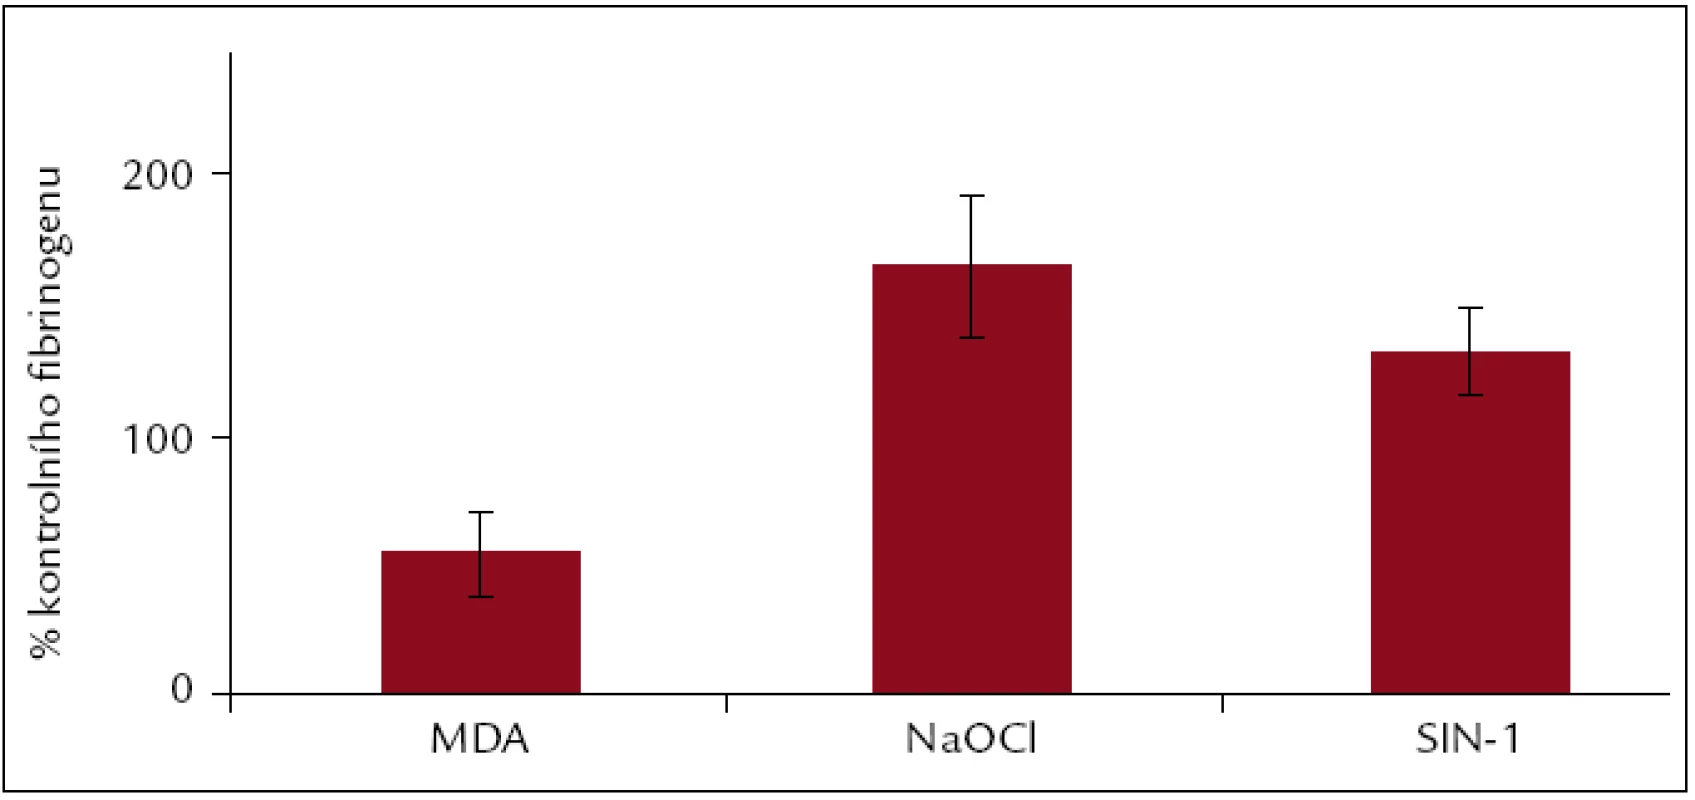 Dynamická adheze v přítomnosti fibrinogenu, modifikovaného MDA, NaOCl a SIN-1. Hodnoty jsou vyjádřeny jako procenta hodnot kontrolního fibrinogenu pro jednotlivé modifikace.